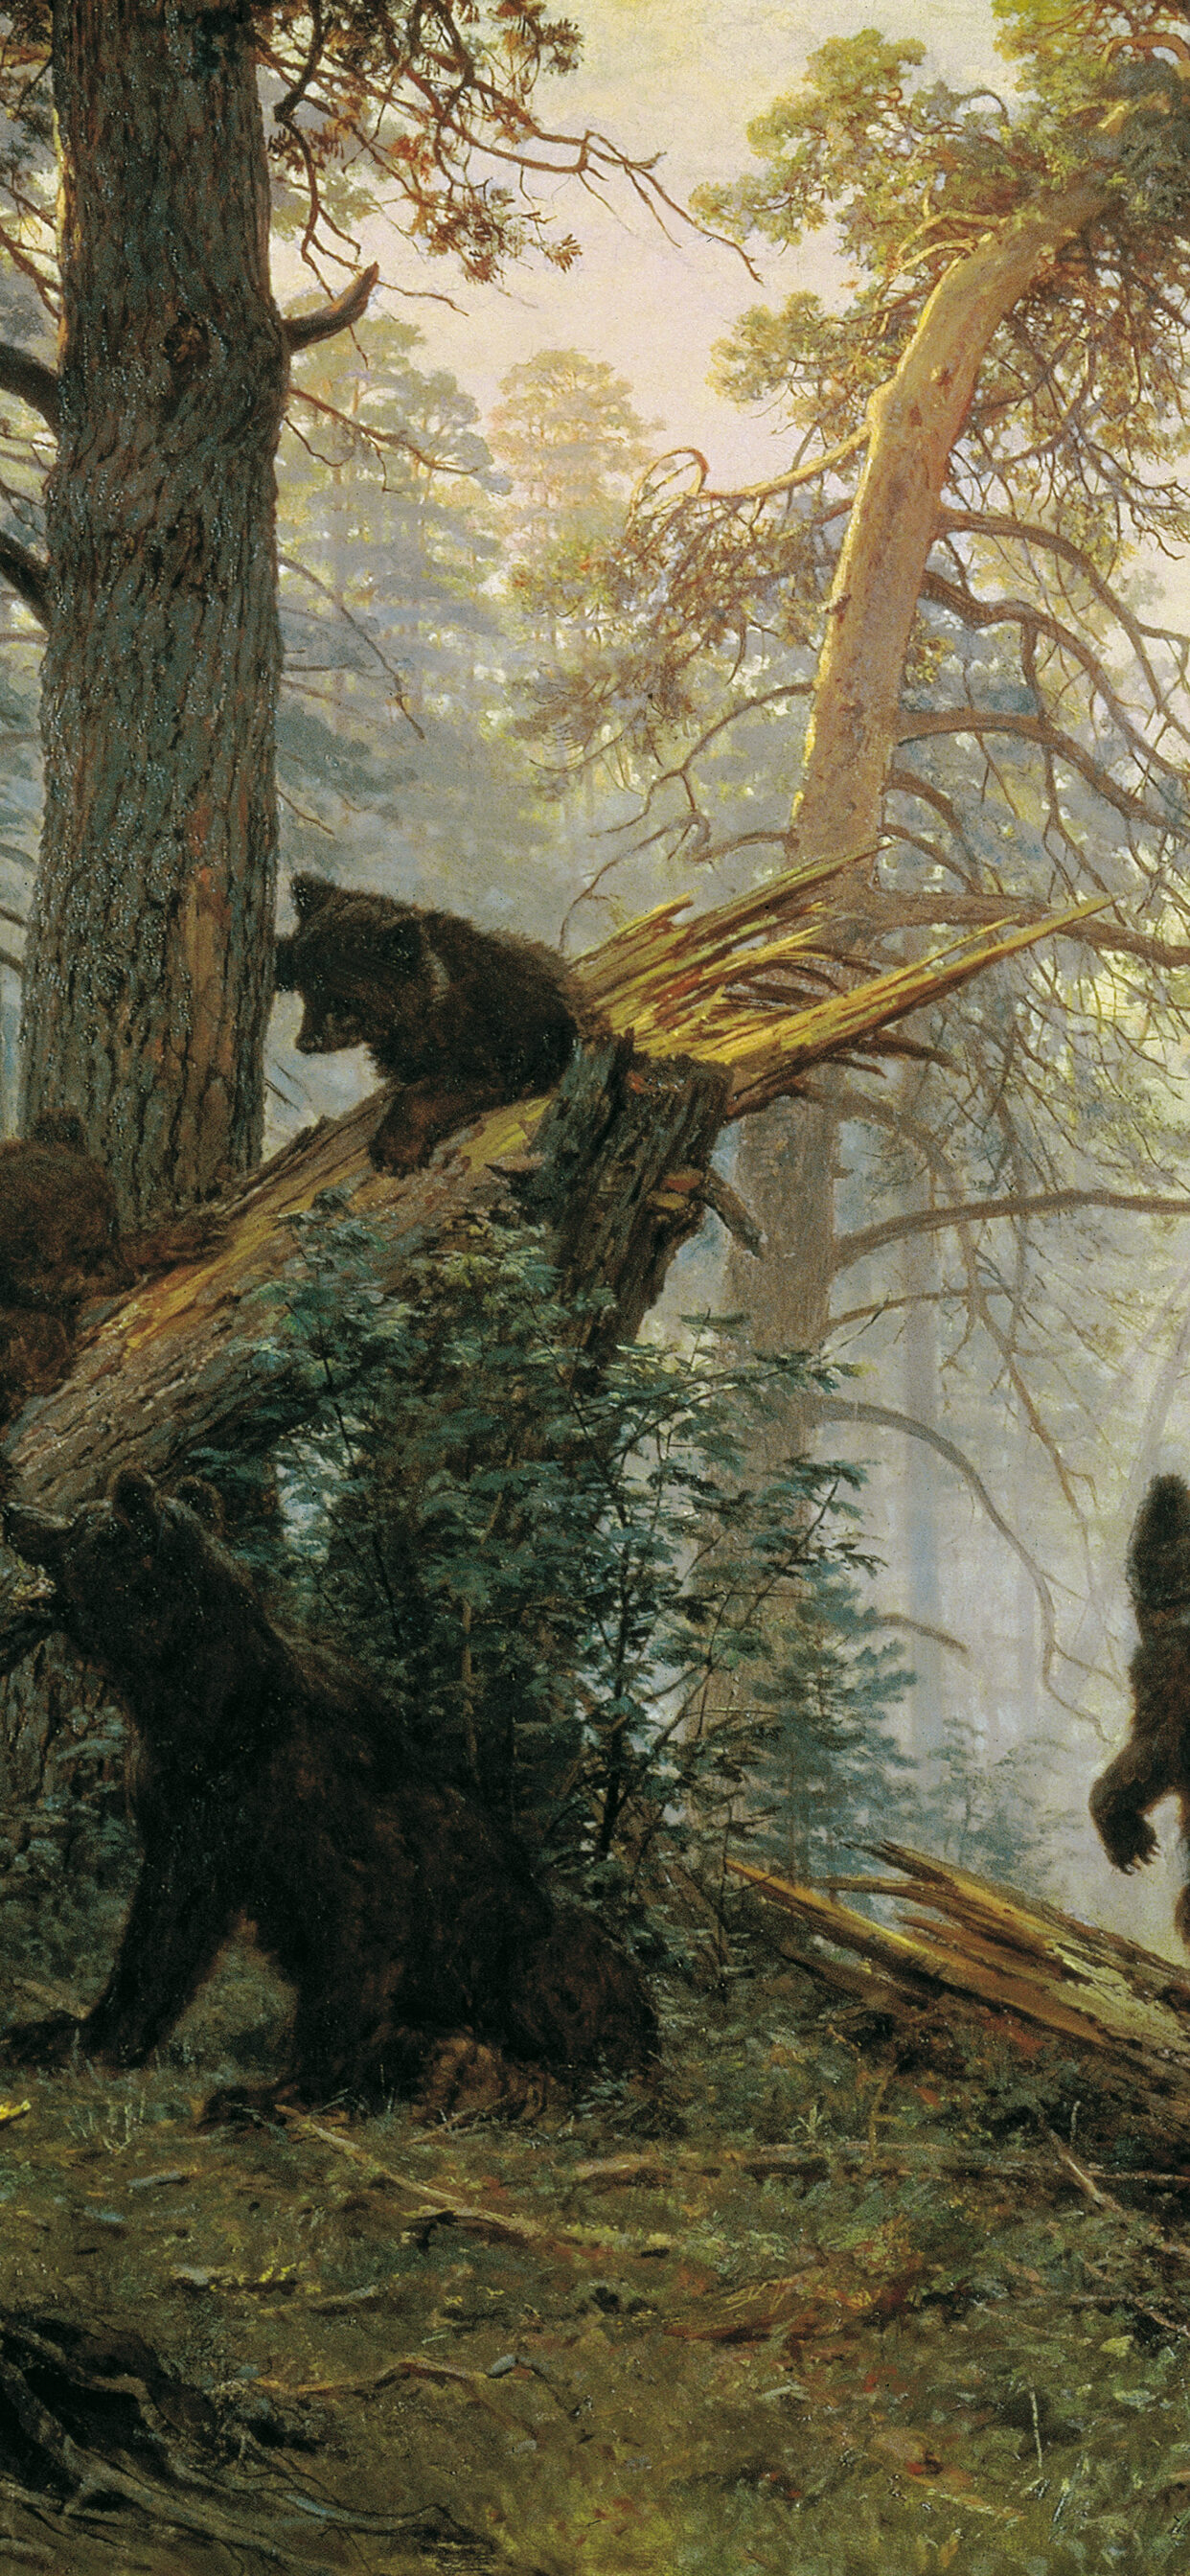 Шишкин три медведя (Большая коллекция фотографий) - treepics.ru